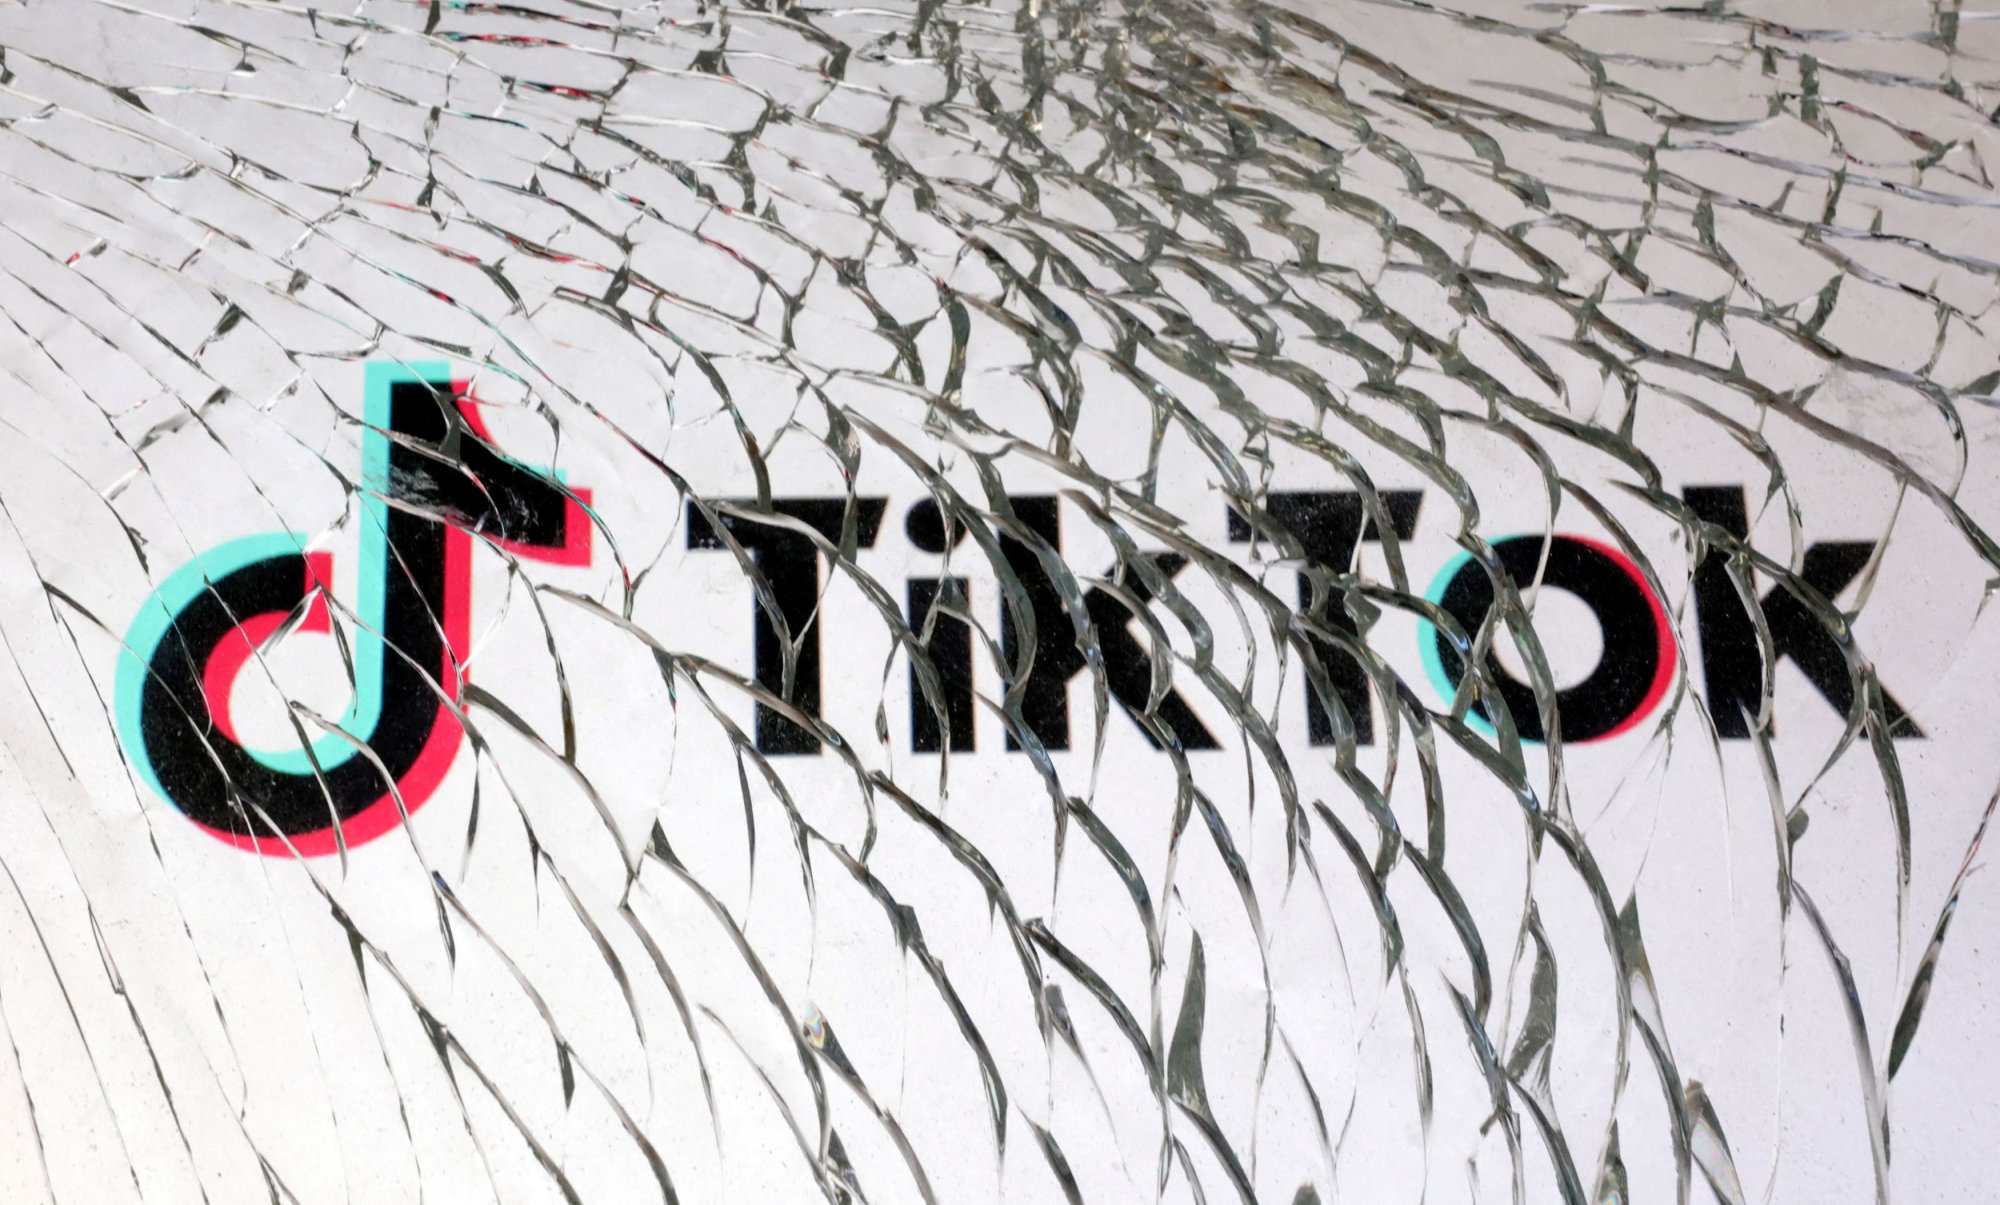 ΤikTok: Σε διπλή μέγγενη από ΗΠΑ και Ευρώπη